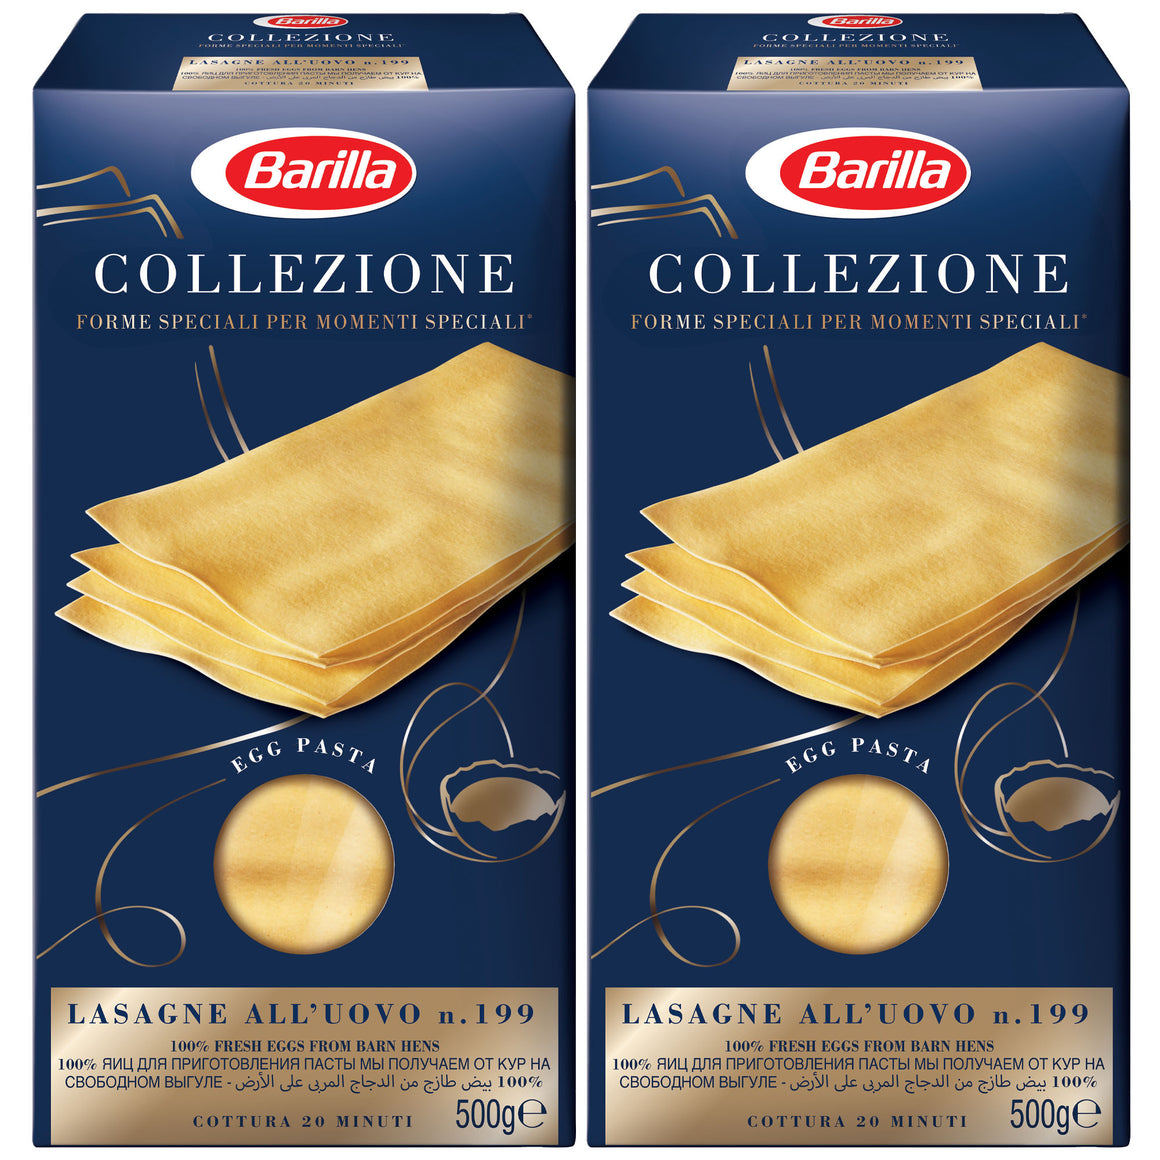 Barilla Collezione Pasta Lasagne Semola 500g x 2